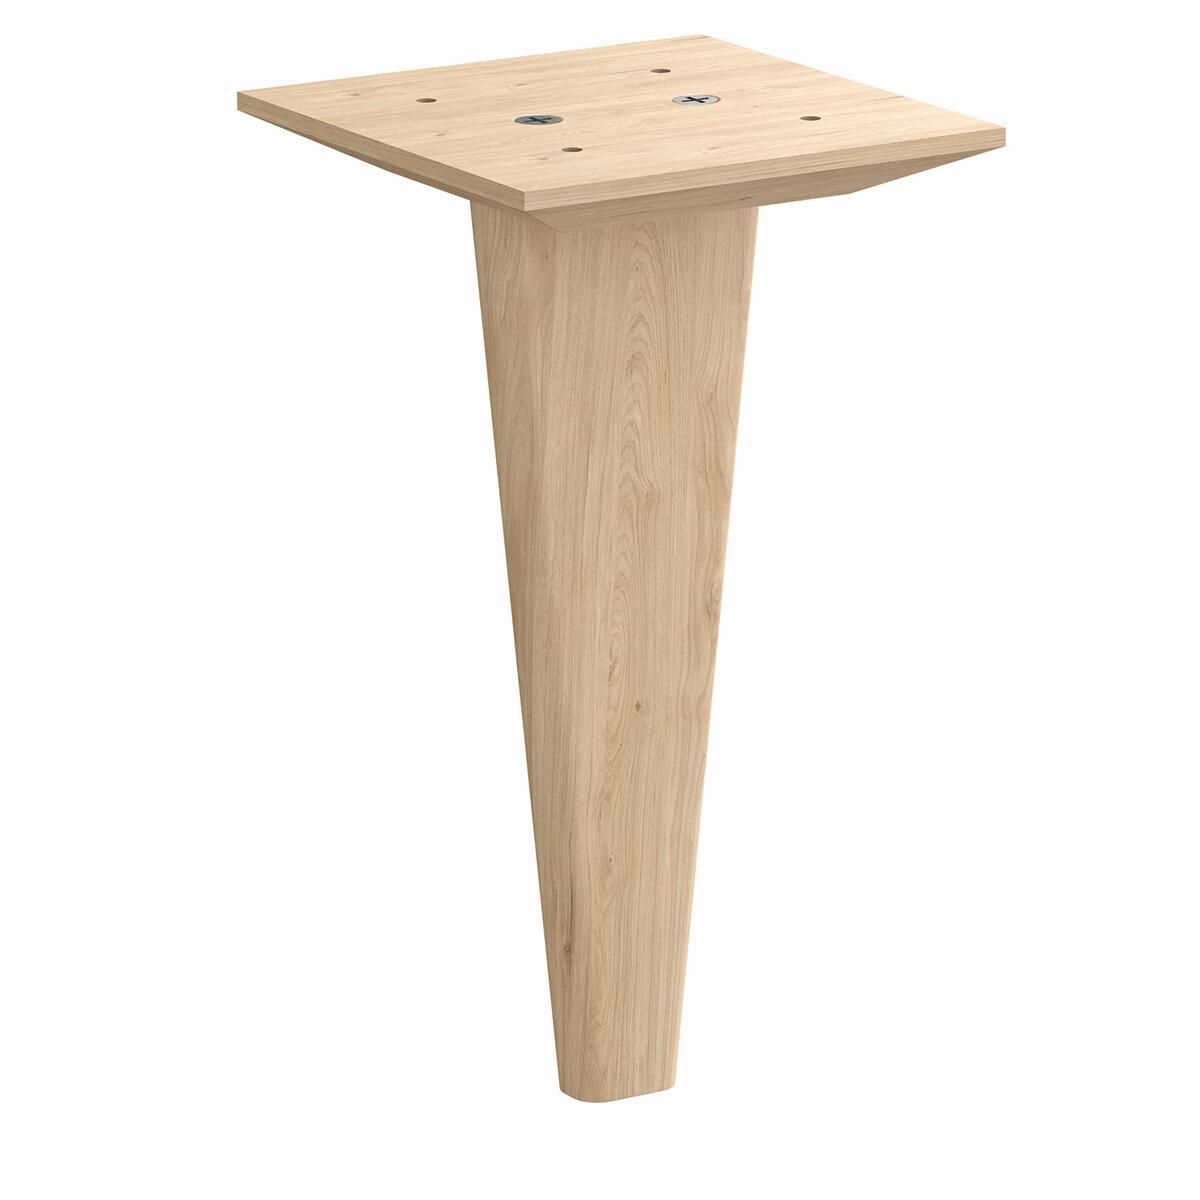 Pata fija de madera para mueble 21.6 cm